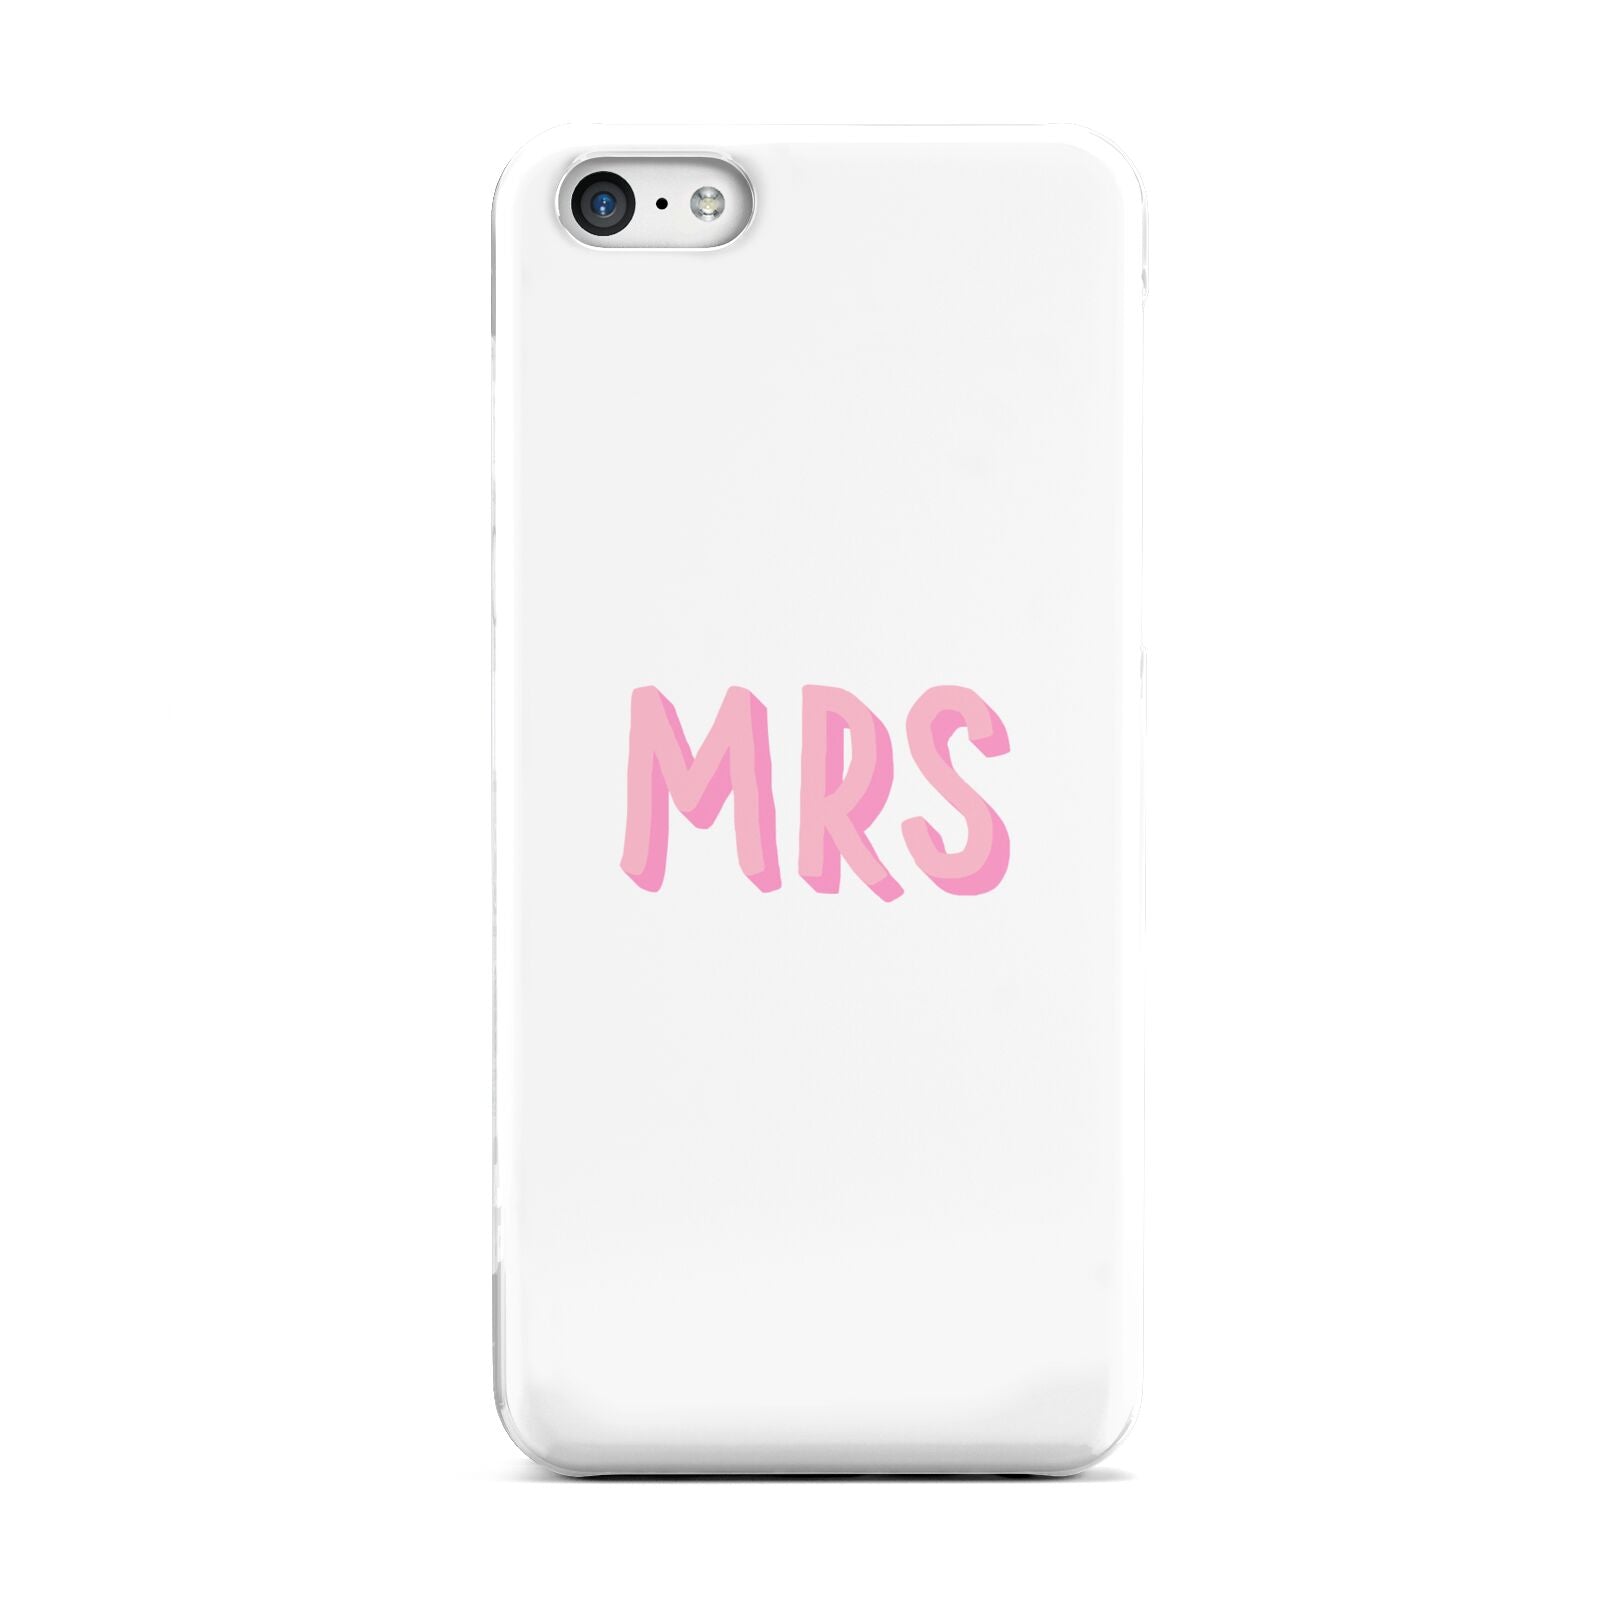 Mrs Apple iPhone 5c Case